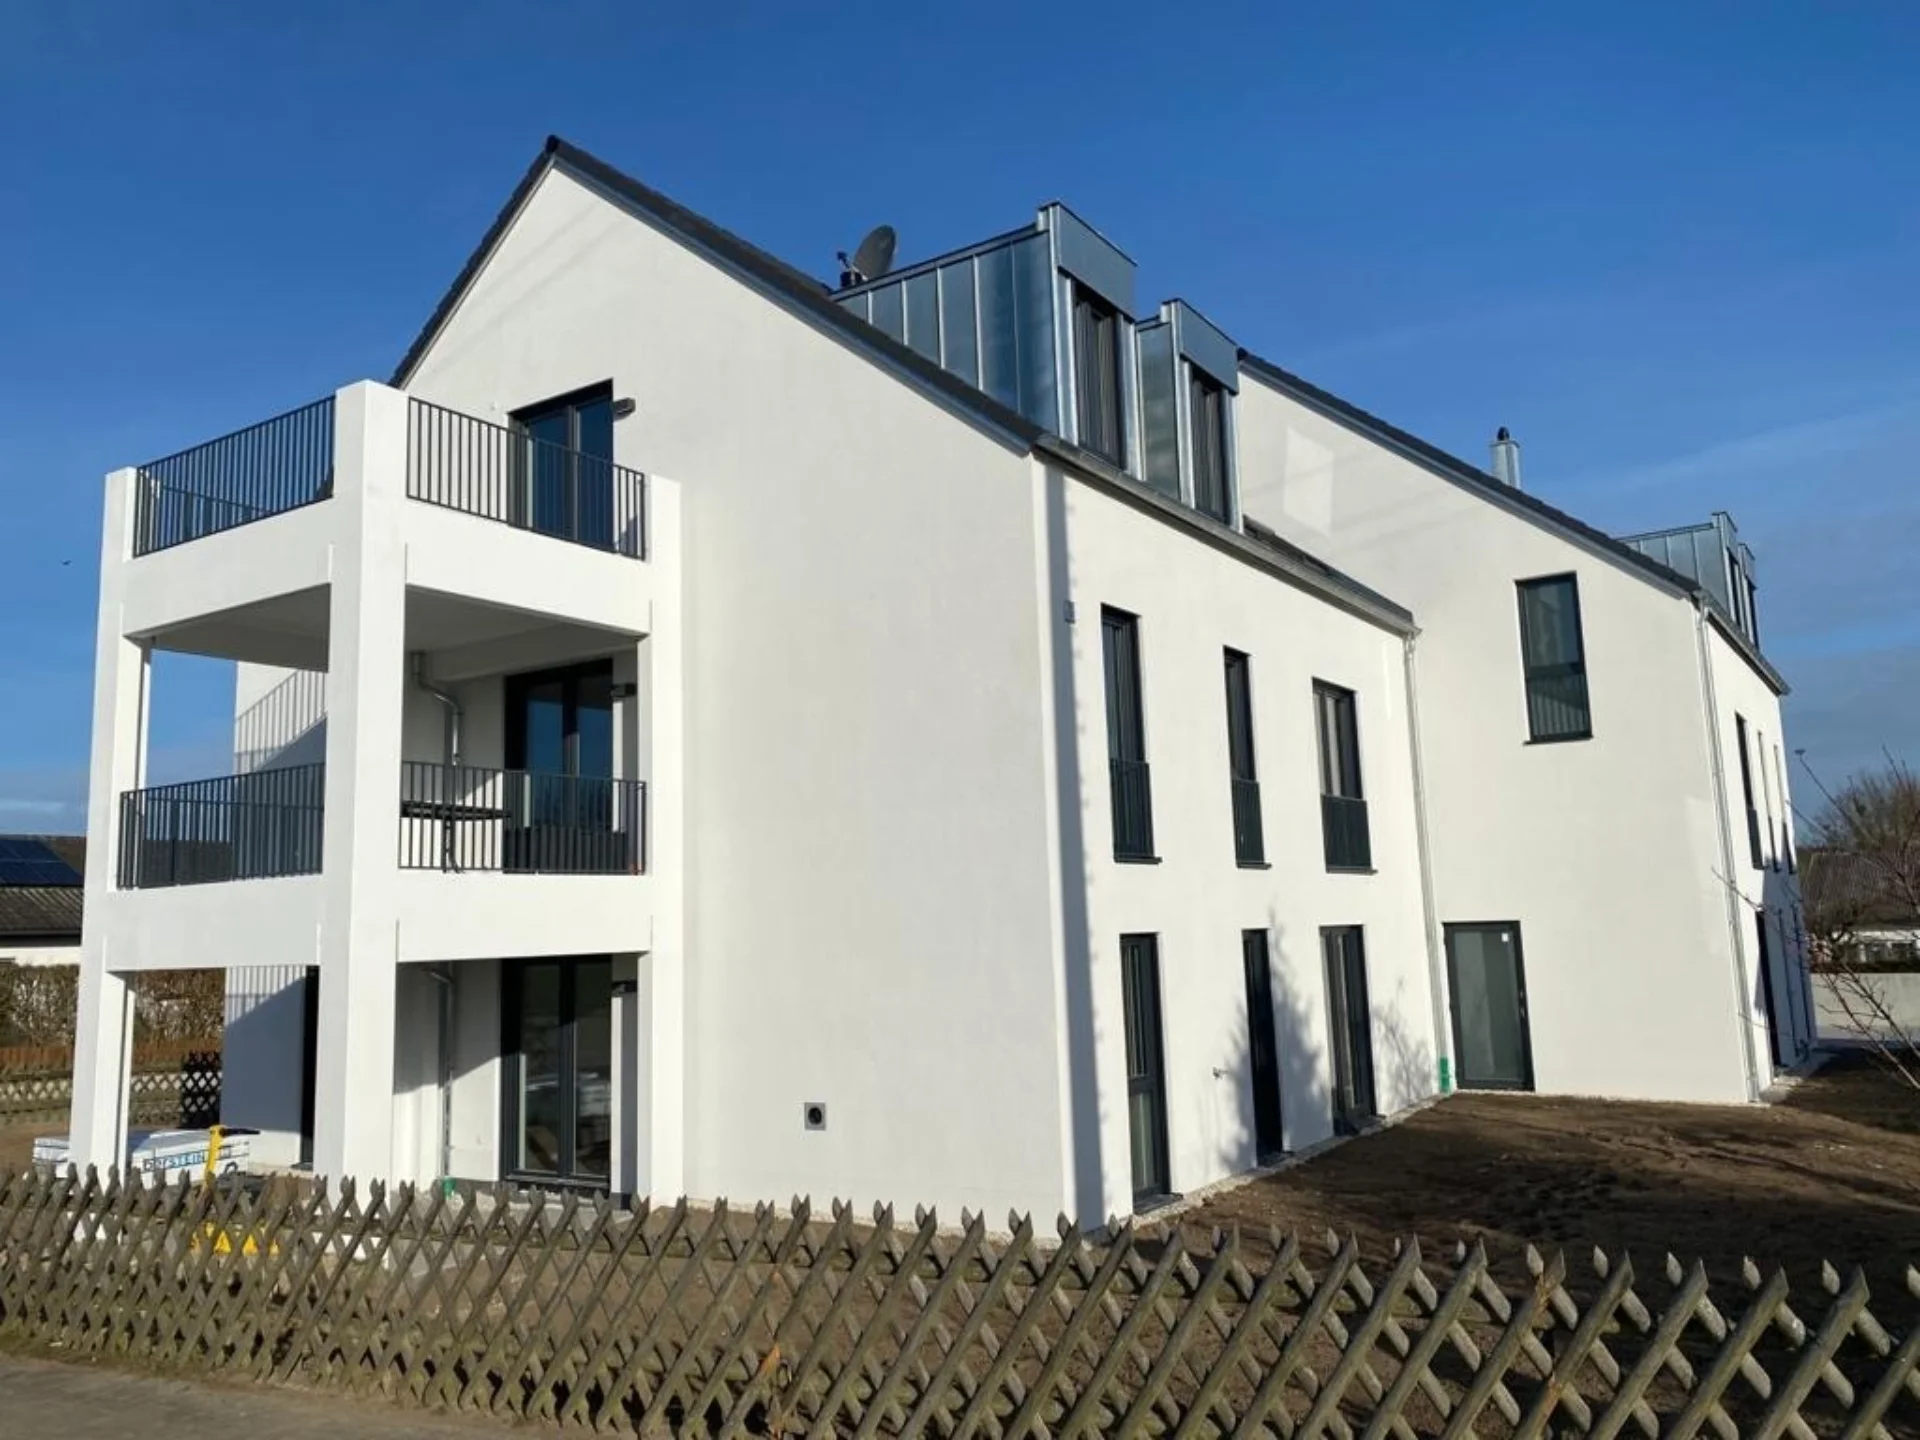 Mehrfamilienhaus, Referenz der Firma FT Bauelemente GmbH in Massing